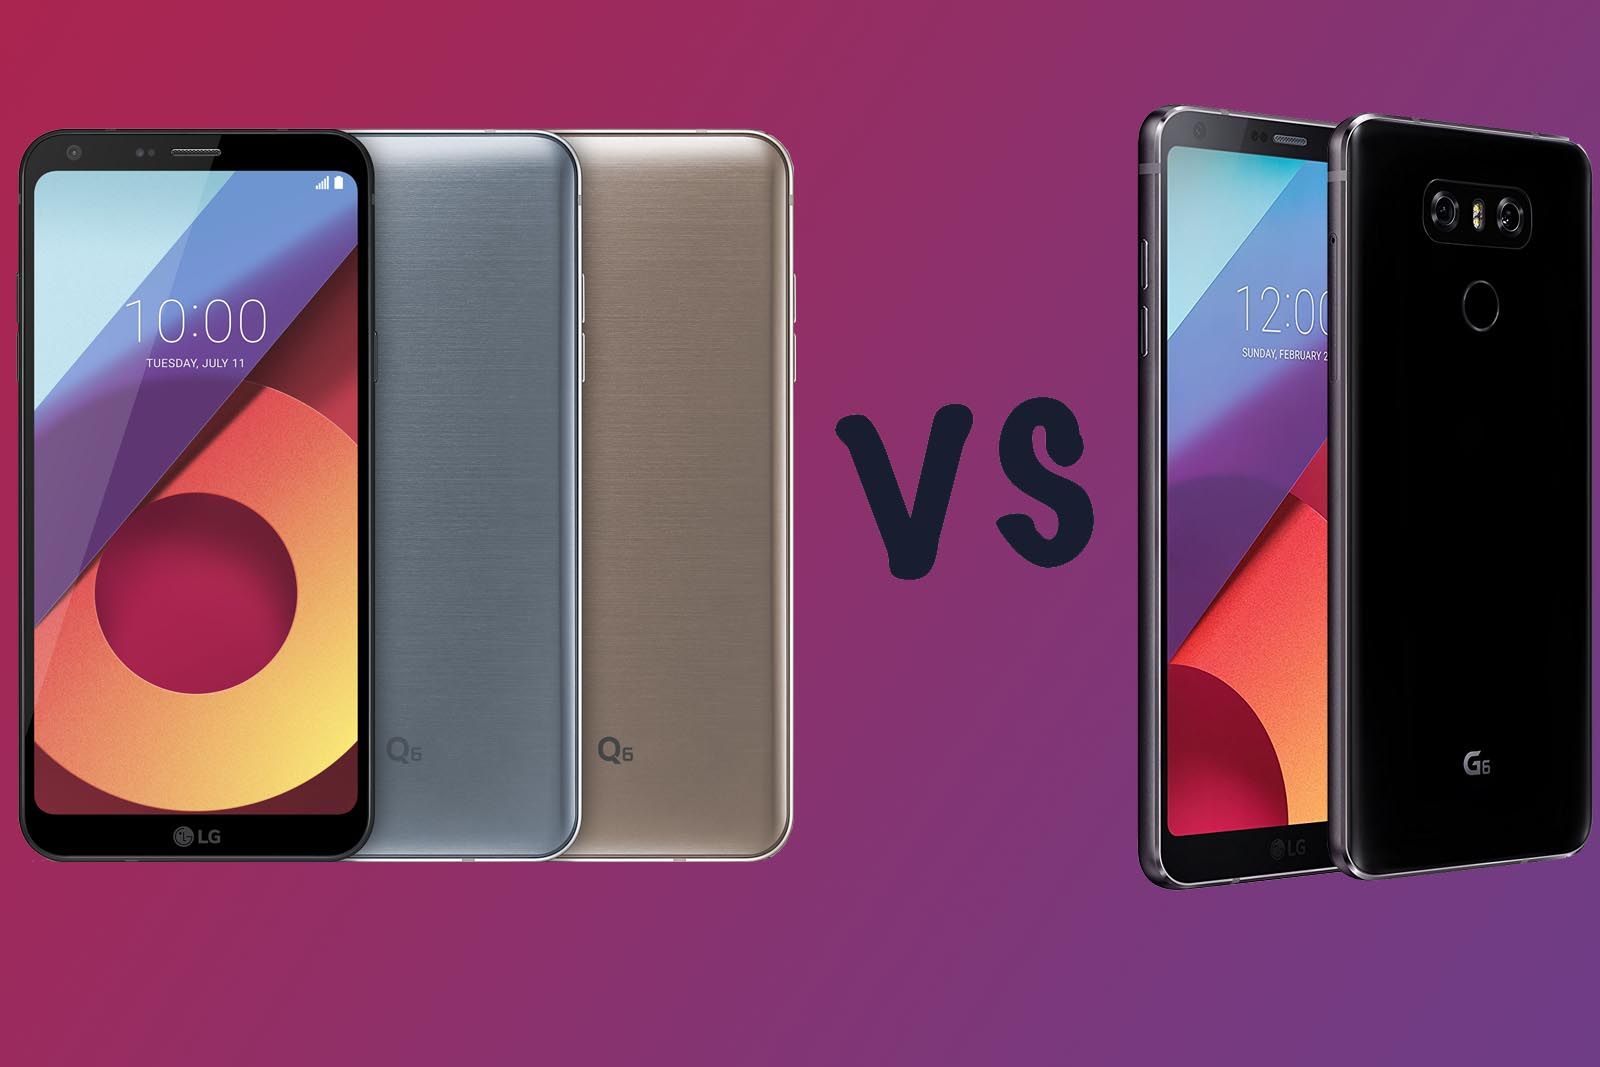 LG Q6 vs LG G6 image 1